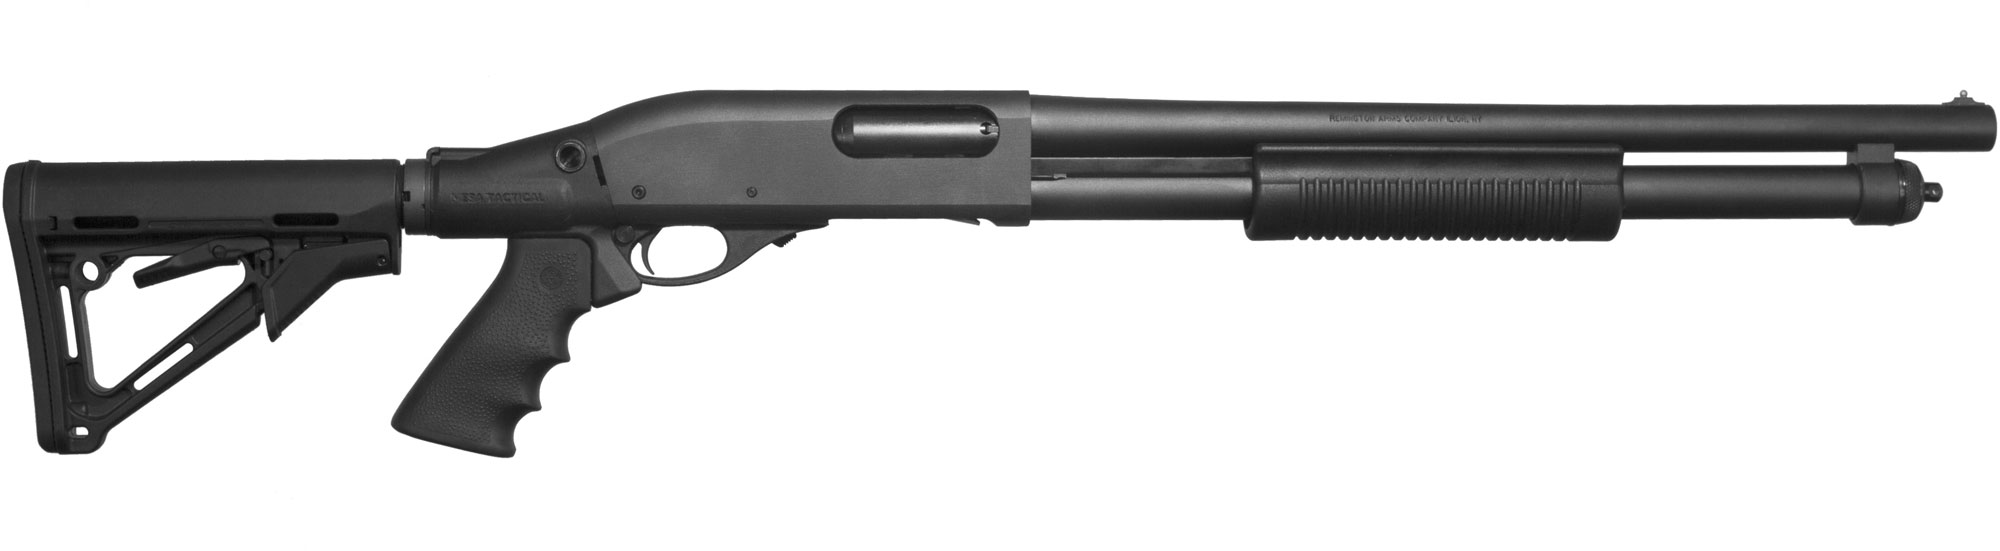 Remington 870 TACTICAL 12 GAUGE thumbnail